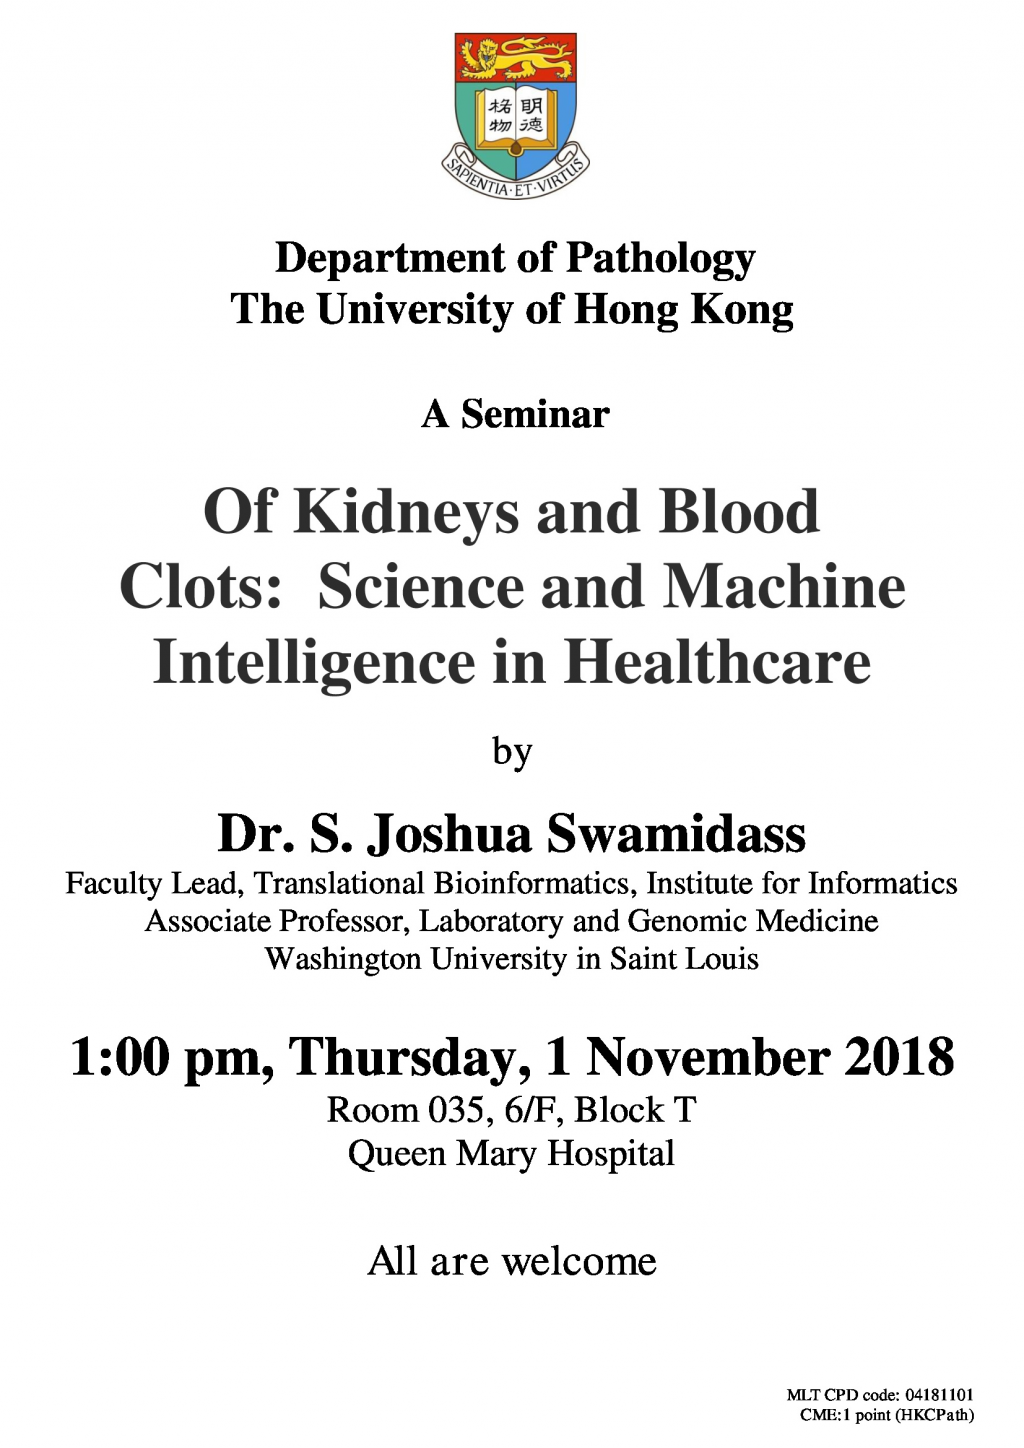 A Seminar by Dr. S. Joshua Swamidass